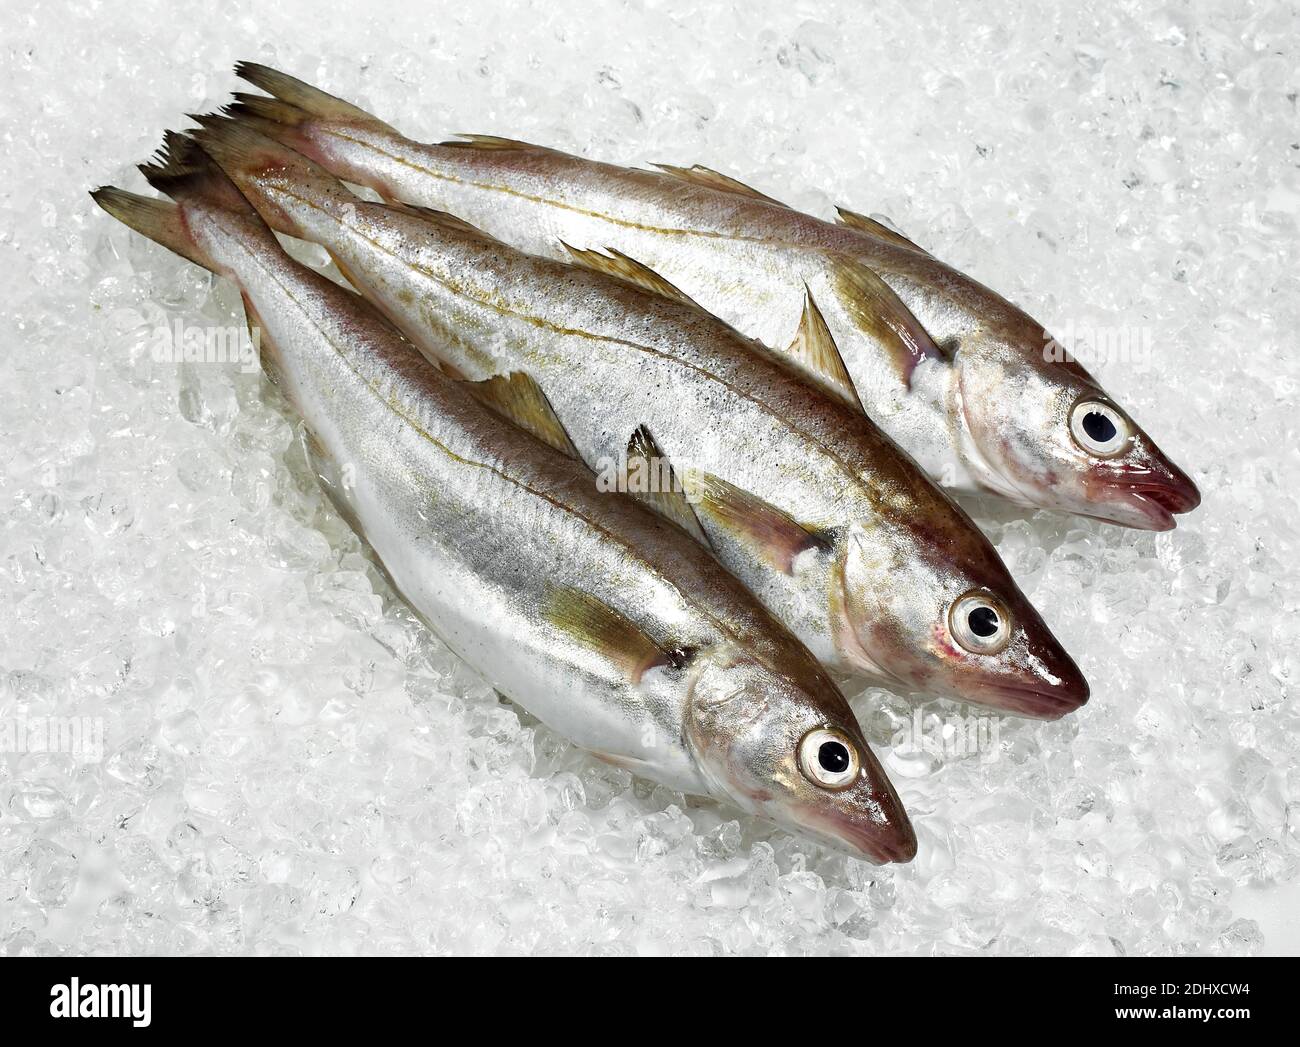 Whiting, merlangius merlangus, Fresh Fishes on Ice Stock Photo